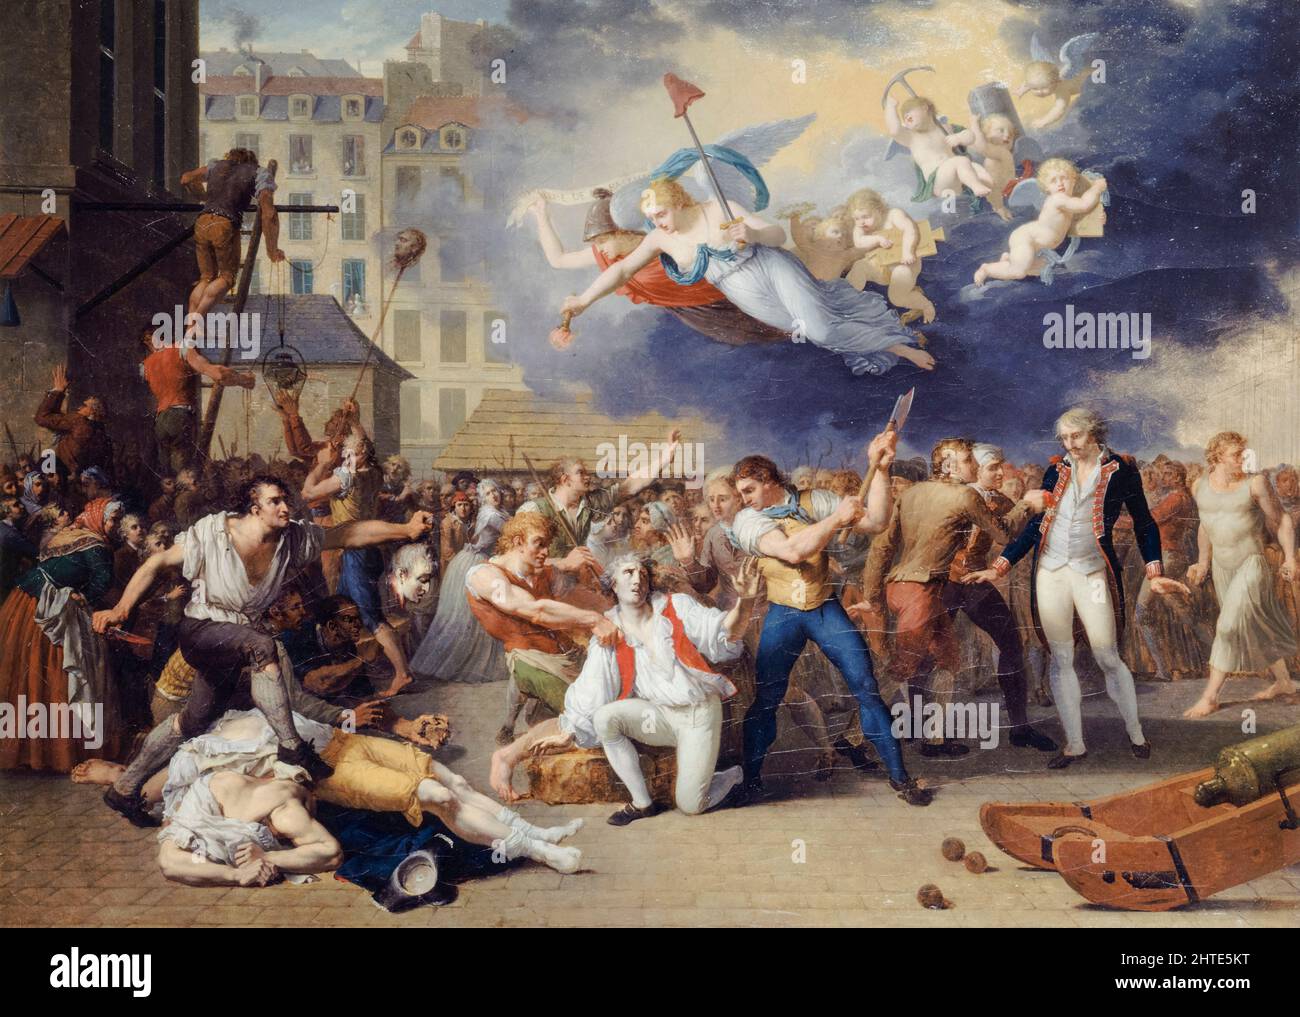 Der Marquis de Pelleport (1754-1807), versucht vergeblich, den Major der Bastille zu retten, Antoine-Jérôme de Losme-Salbray, Juli 14. 1789, (Sturm auf die Bastille), Öl auf Leinwand Gemälde der Französischen Revolution von Charles Thévenin, 1789 Stockfoto